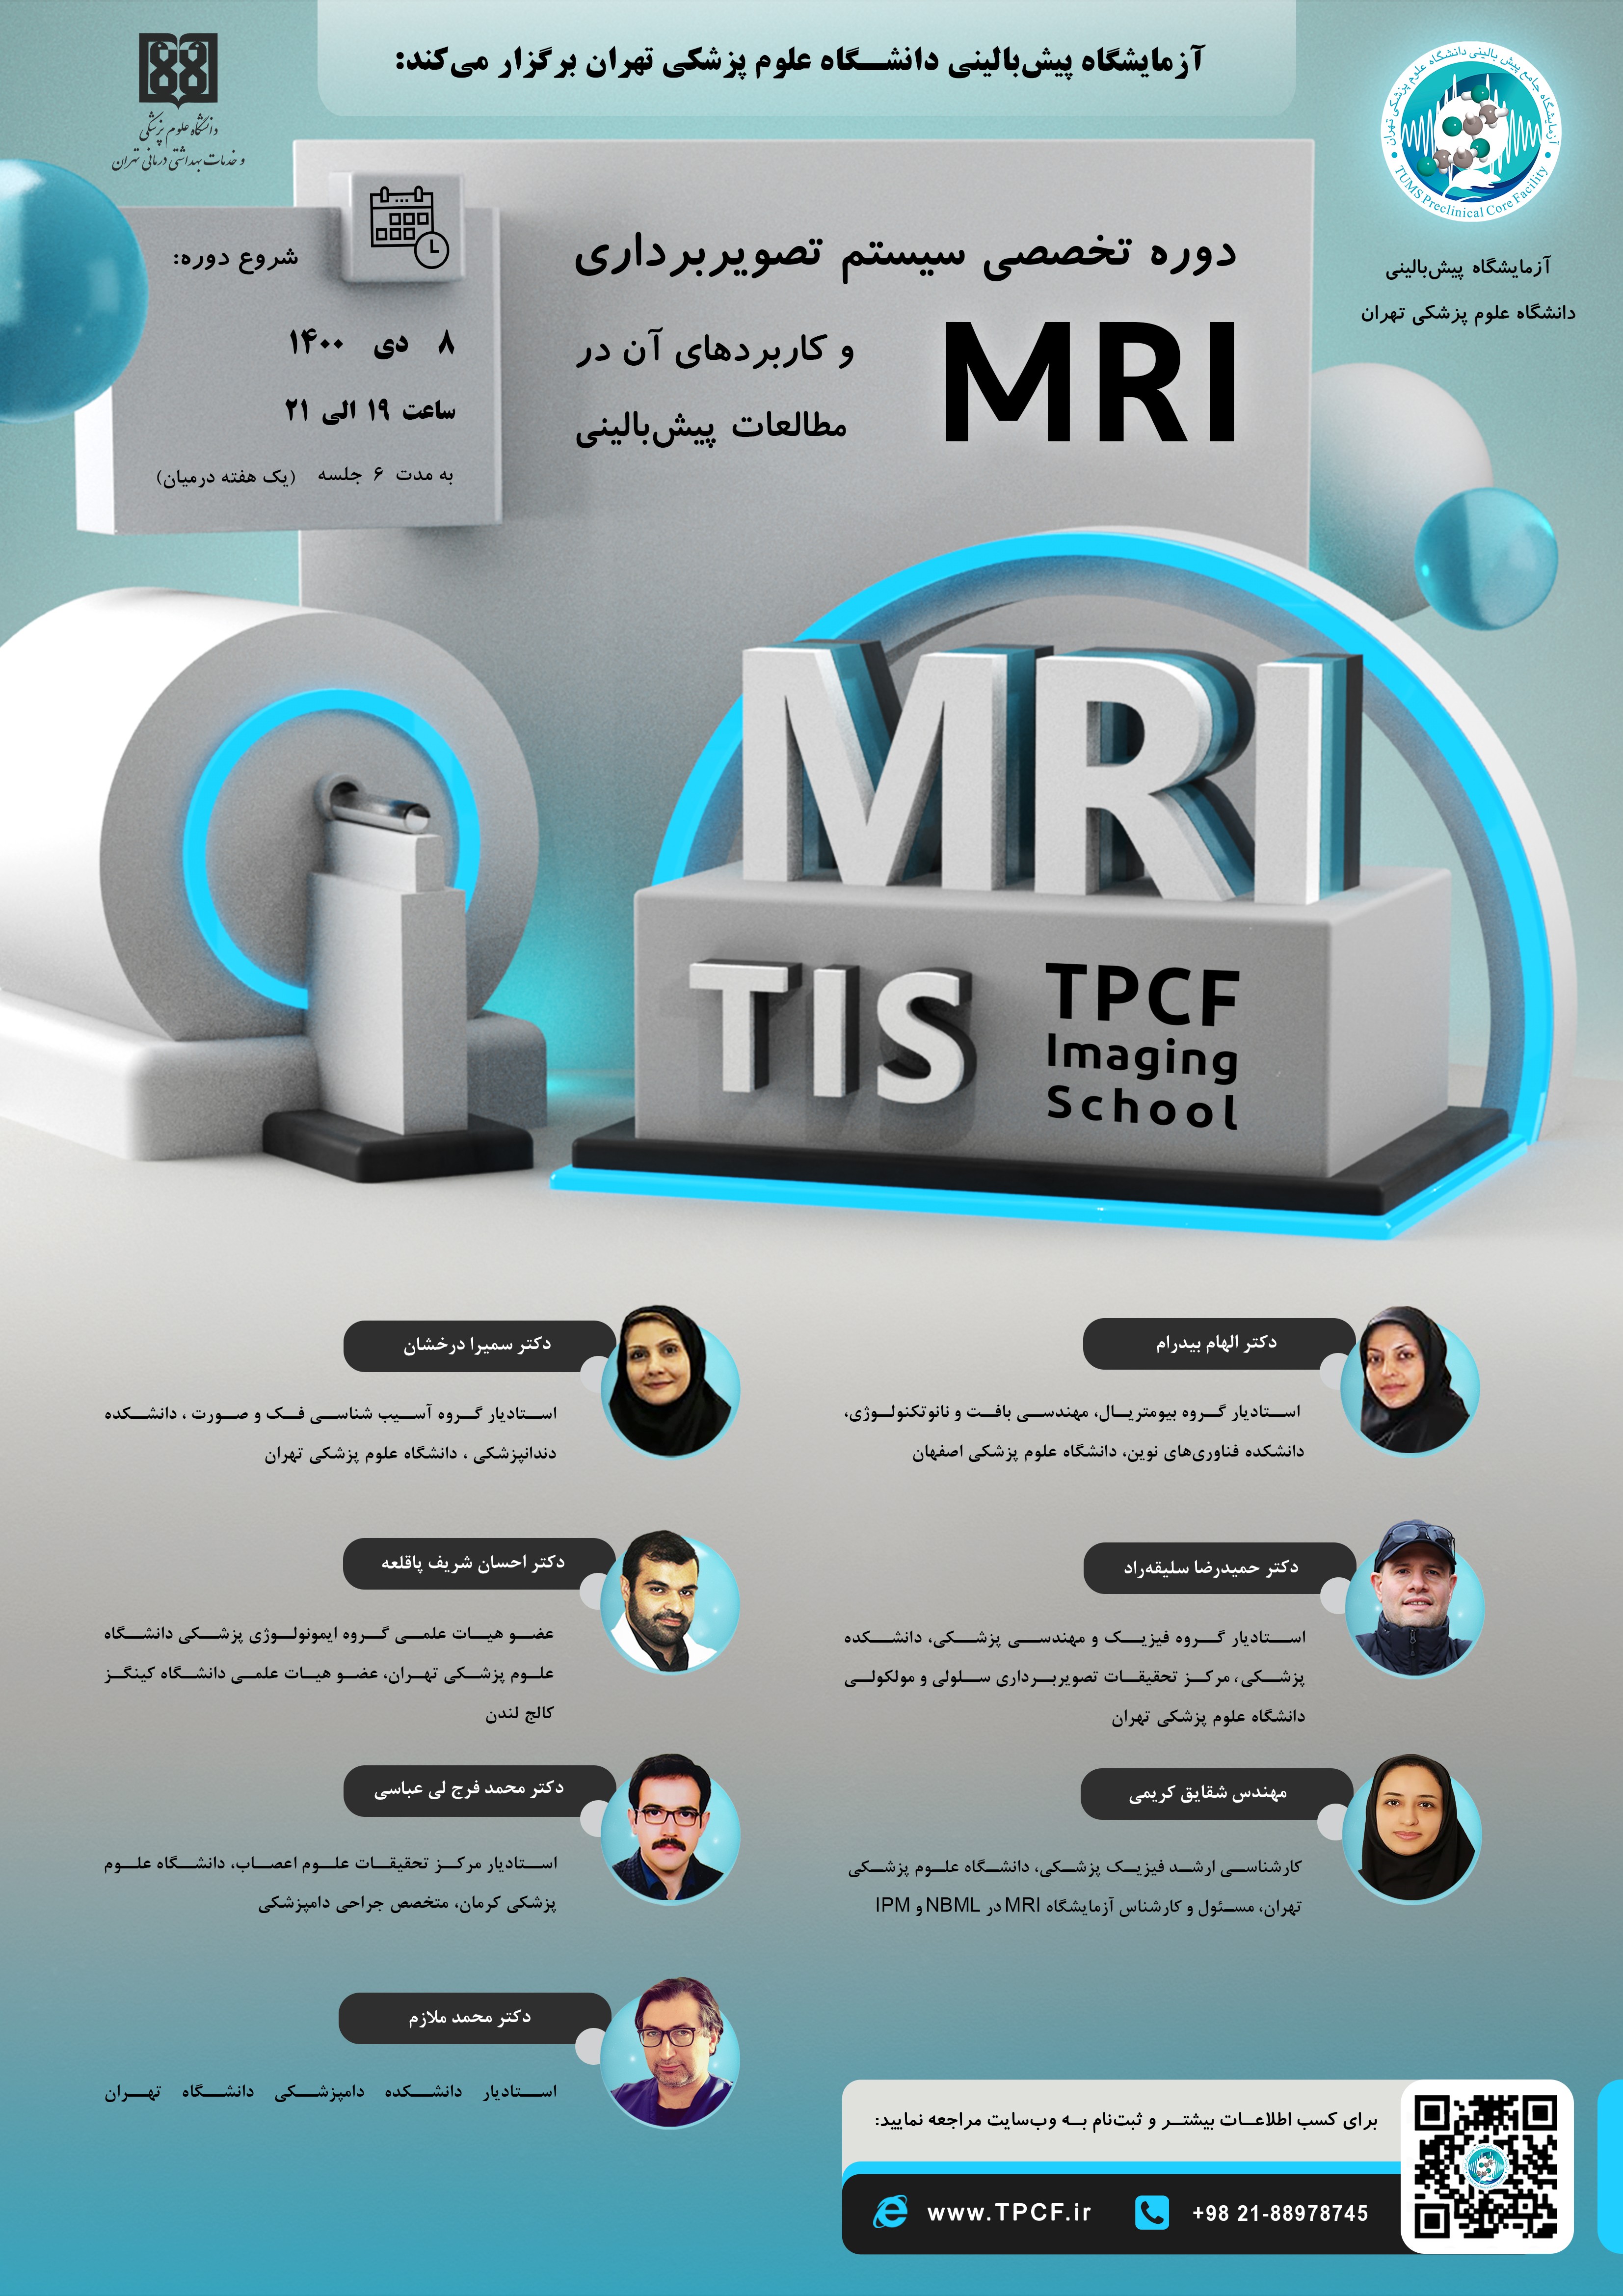 دوره تخصصی آموزش سیستم تصویربرداری MRI و کاربردهای آن در پیش بالینی